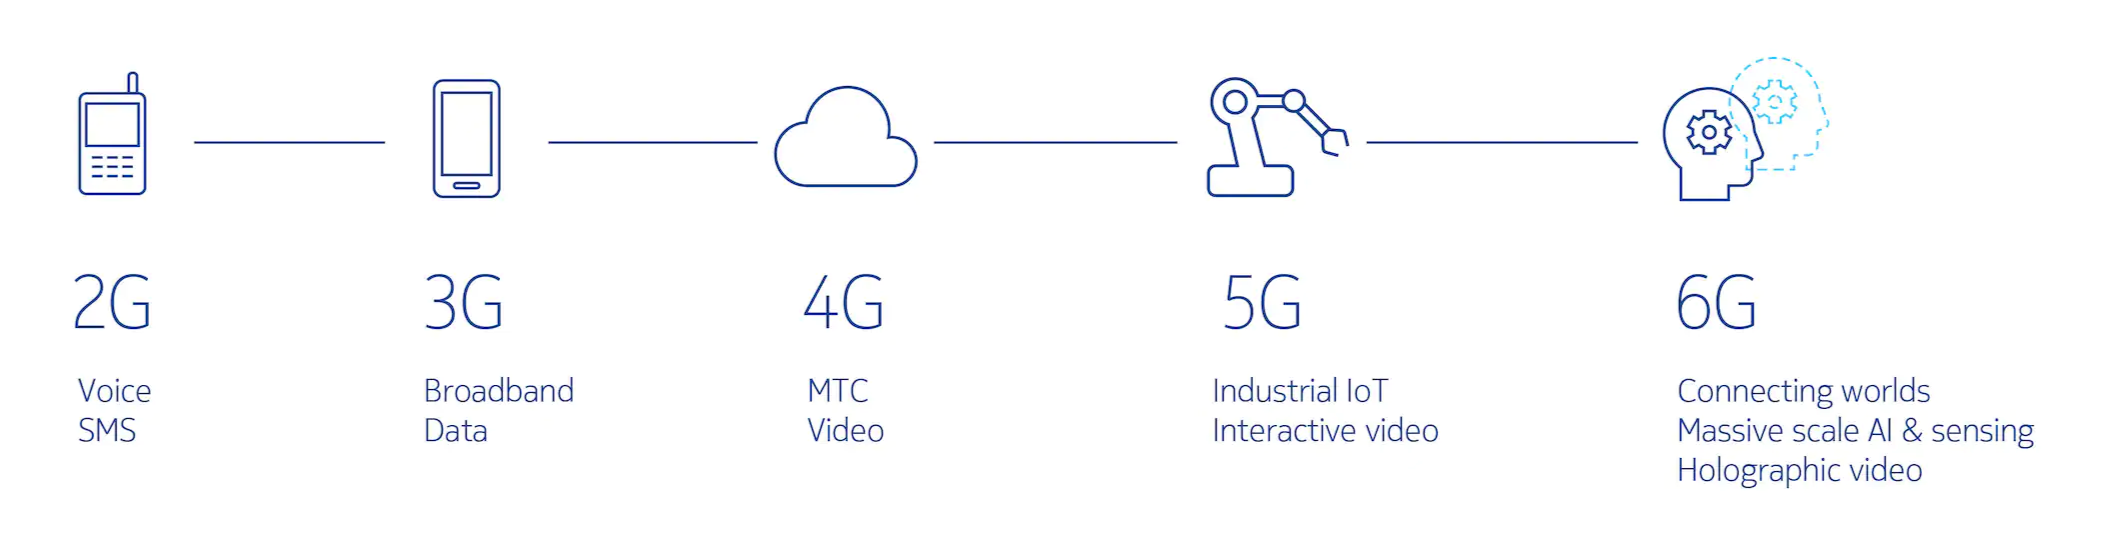 2G'den 6G'ye kadar geniş bant teknoloji özelliklerini gösteren grafik